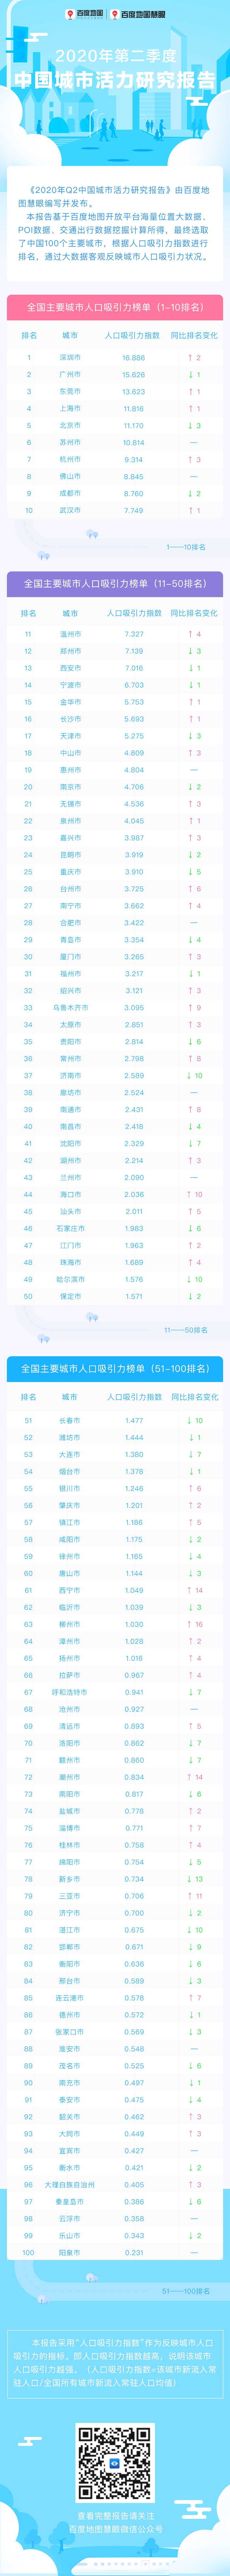 百度地图发布Q2城市人口吸引力榜单：深圳第一 北京第五